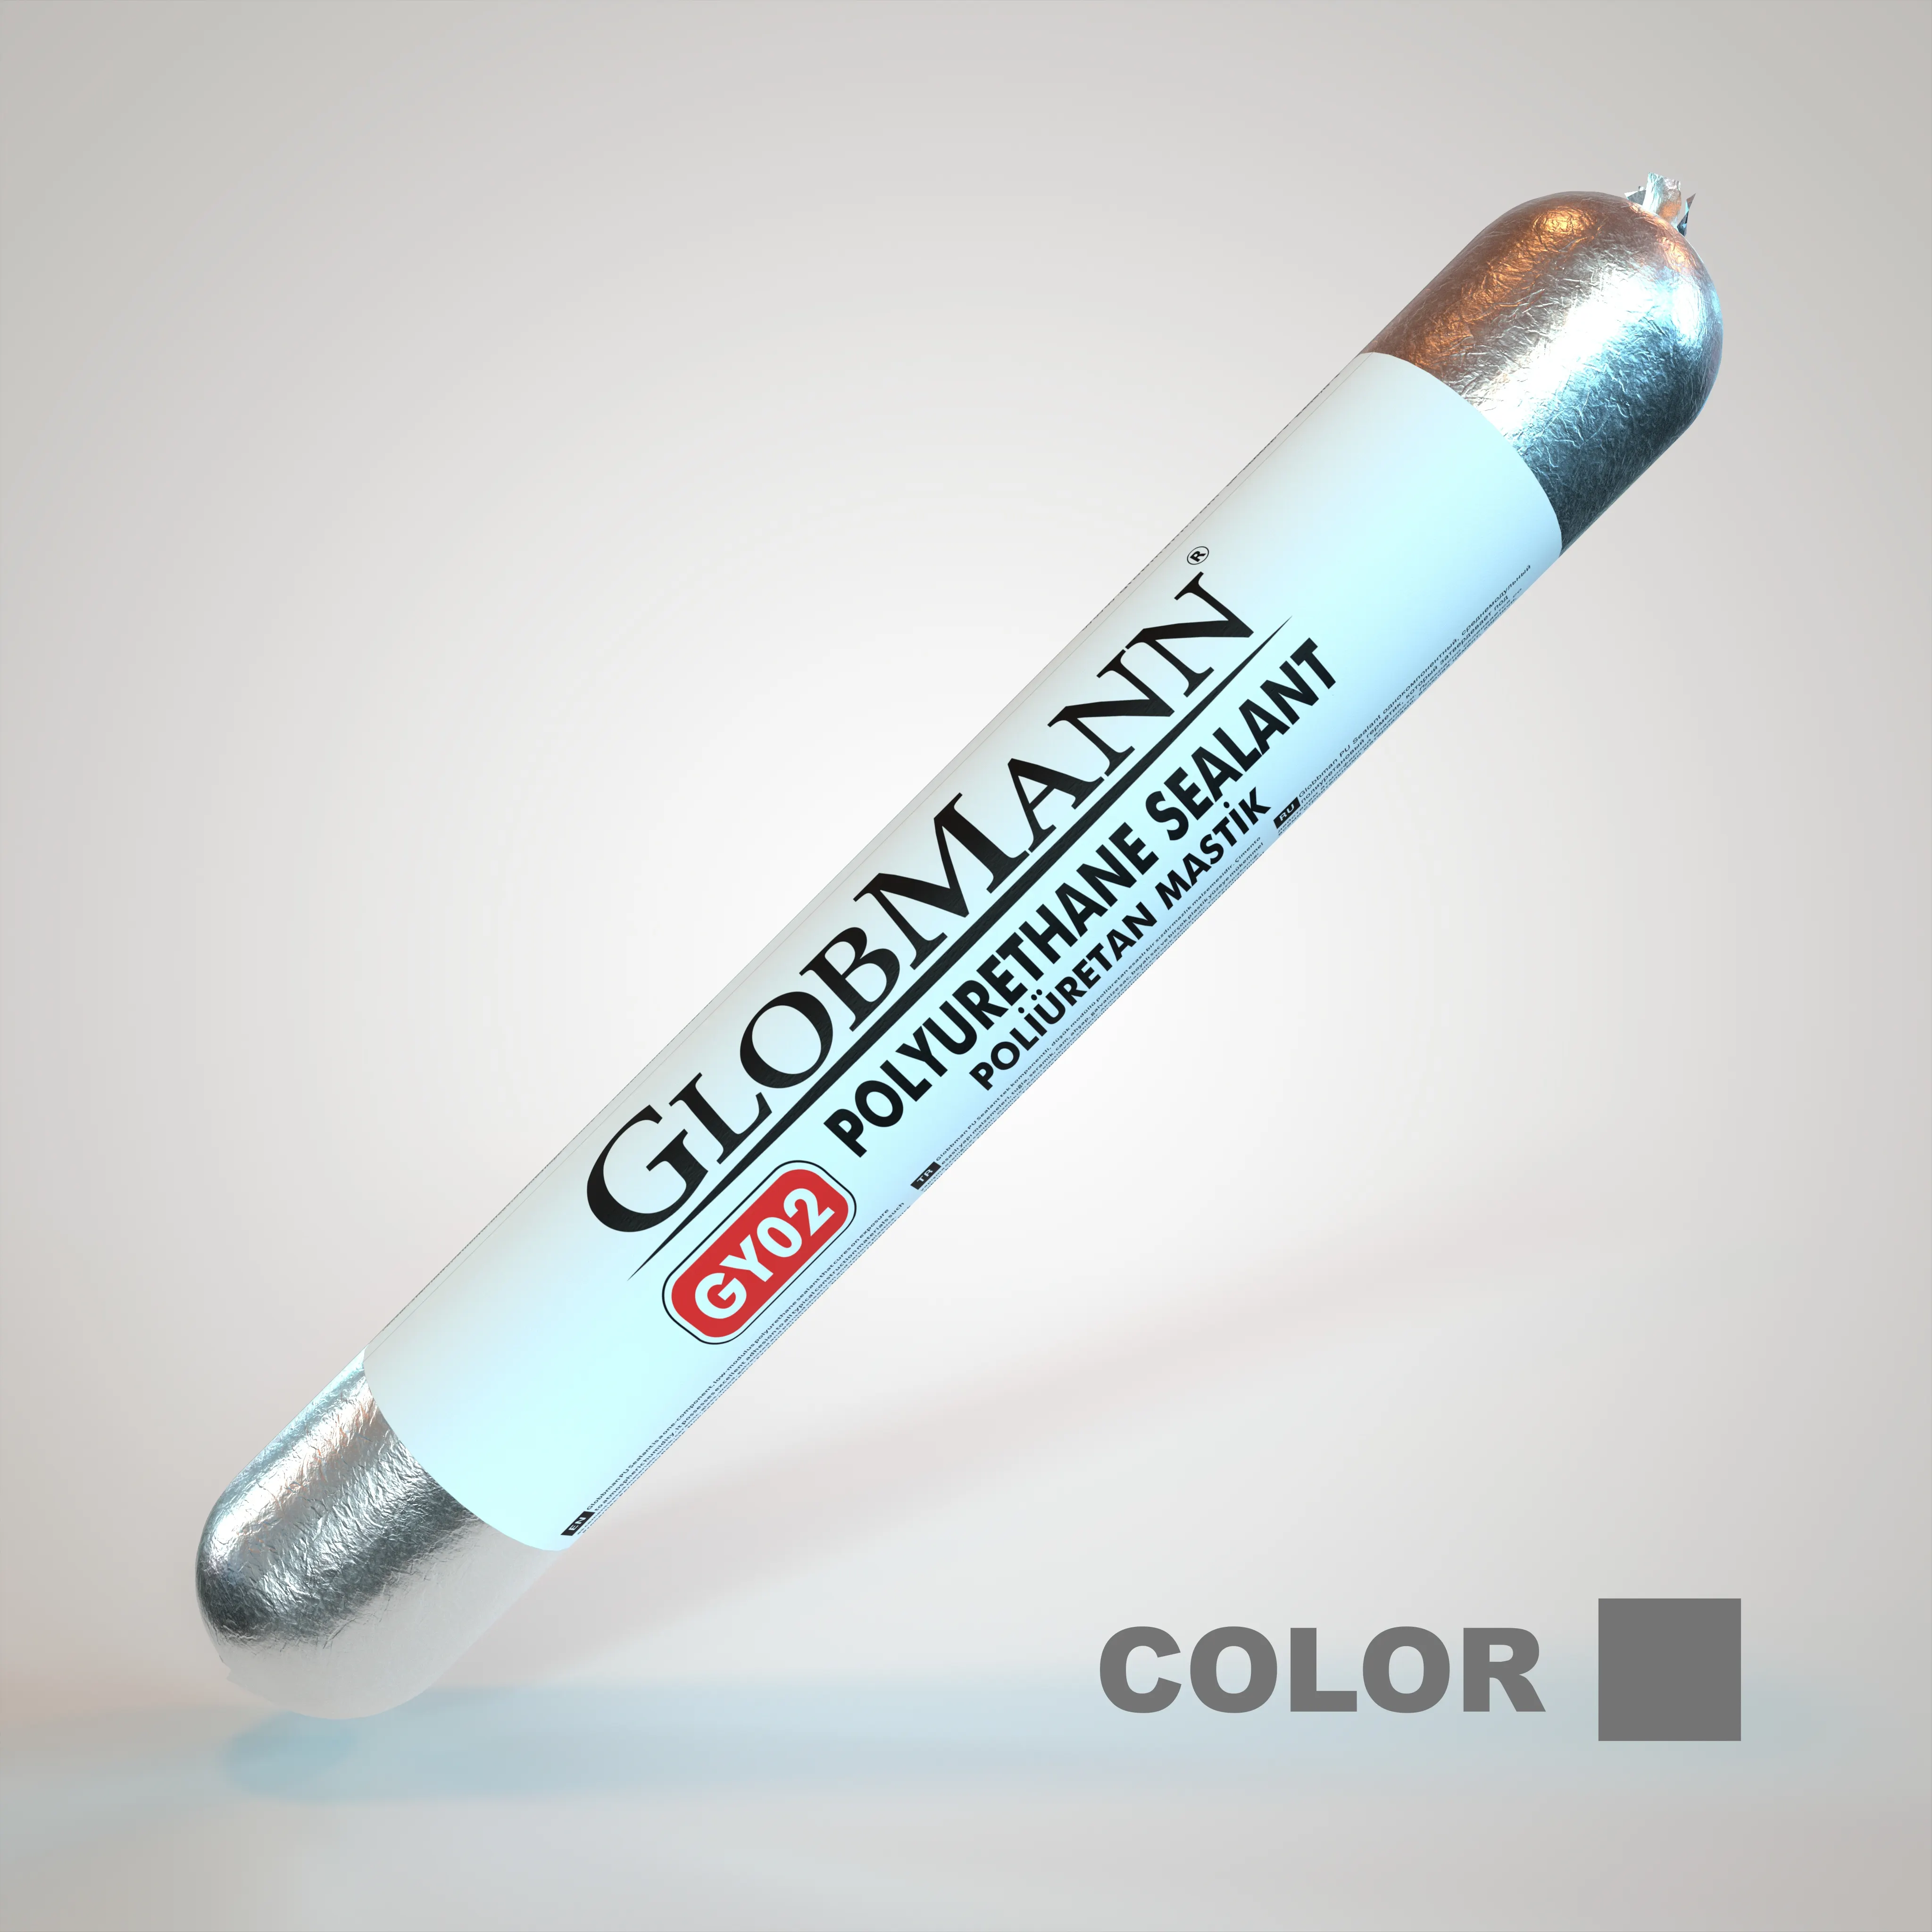 Grijs Polyurethaan Kit 600Ml Shore Een 50 Ultrasterke Kleur Premium Kwaliteit Perfect Resultaat